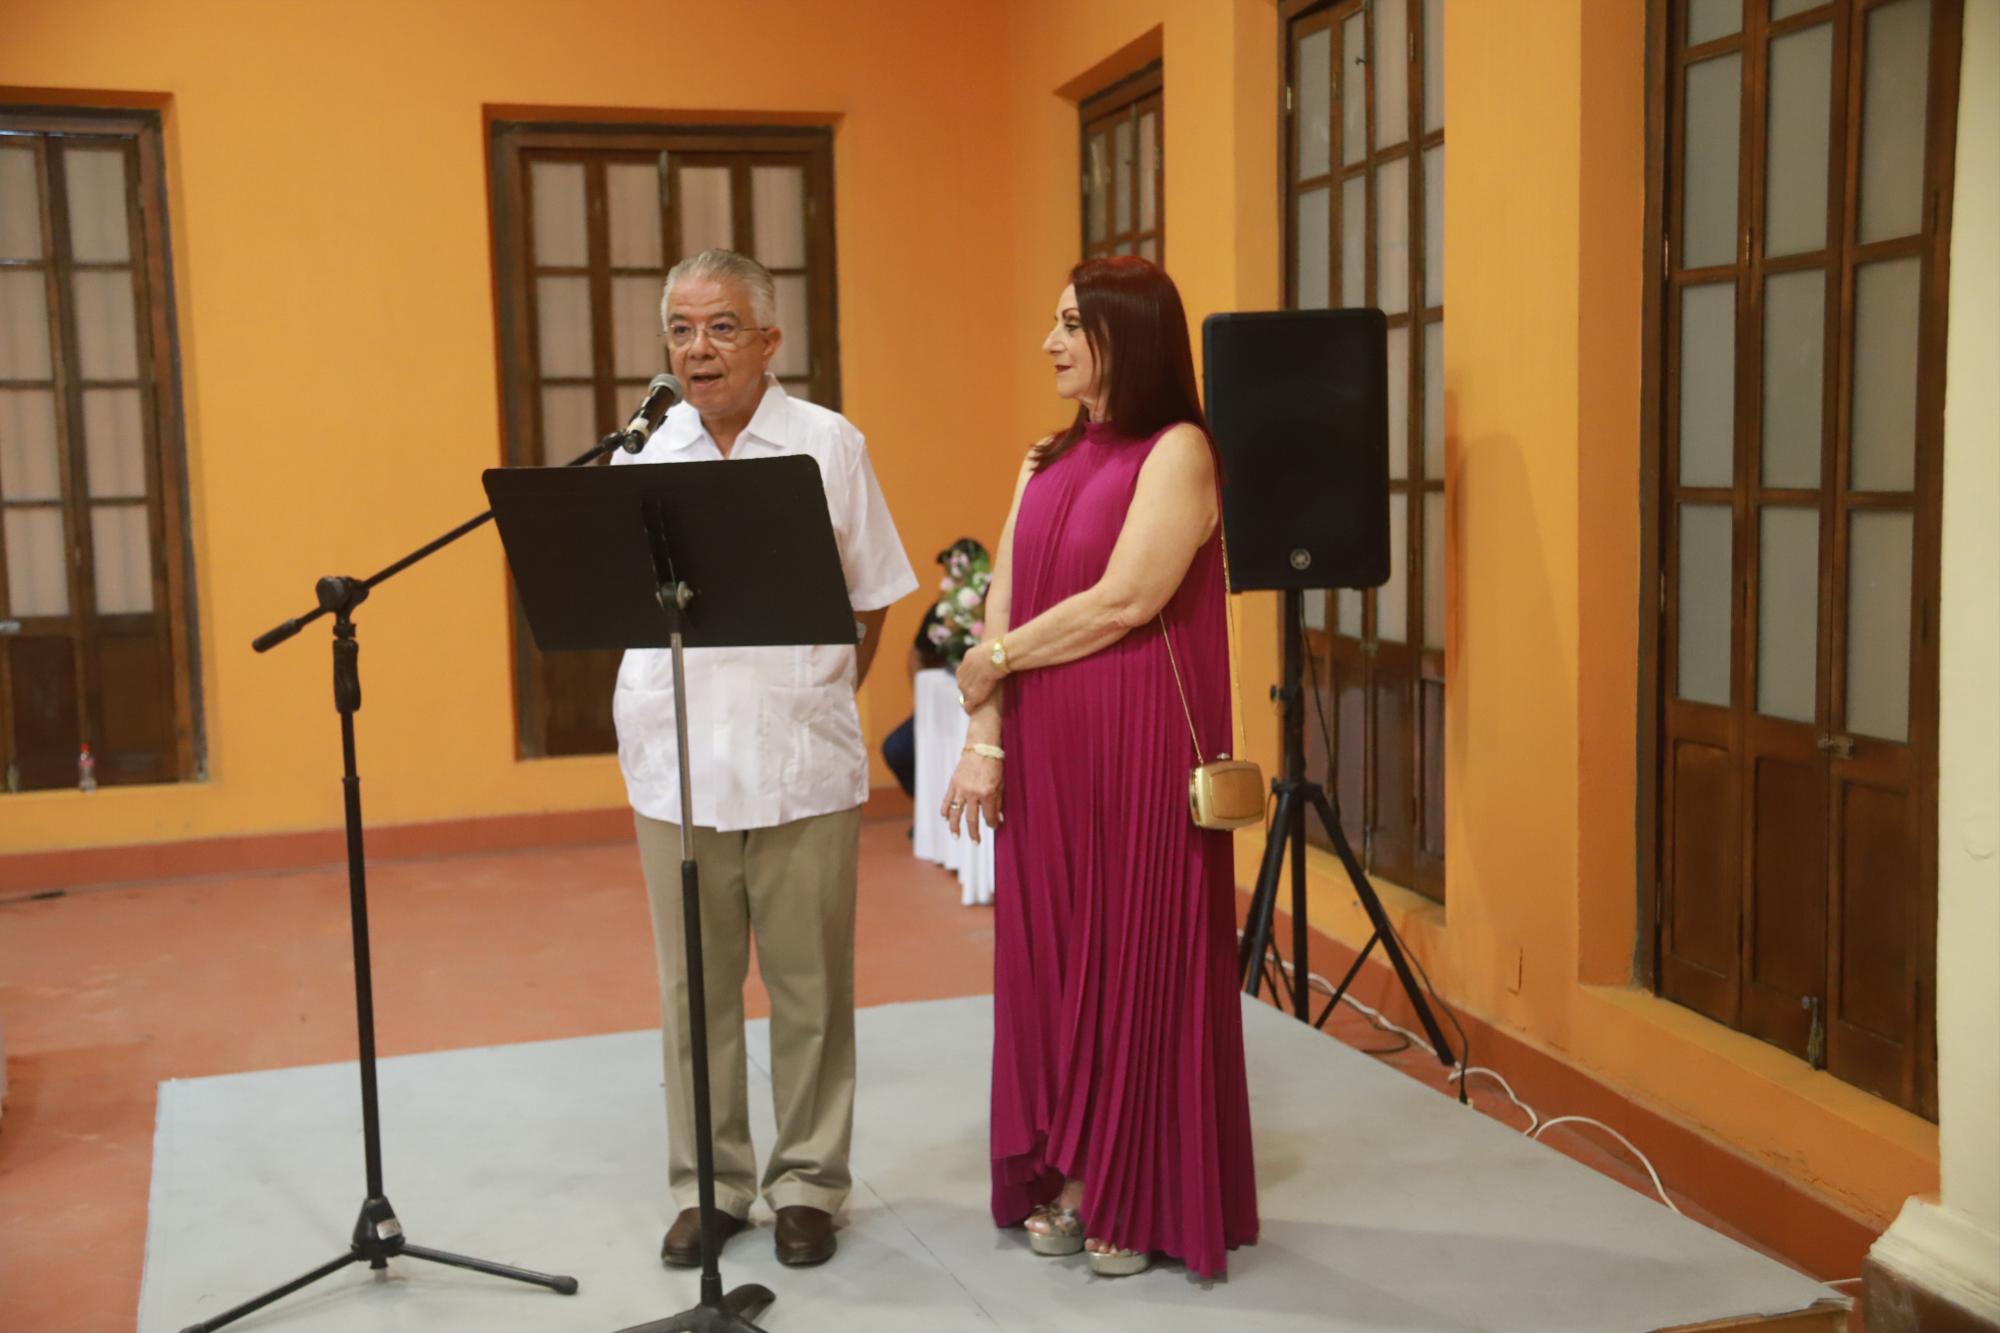 $!El maestro Enrique Vega Ayala, a nombre del Instituto Municipal de Cultura, dio la bienvenida y agradeció la presencia de la artista plástica.